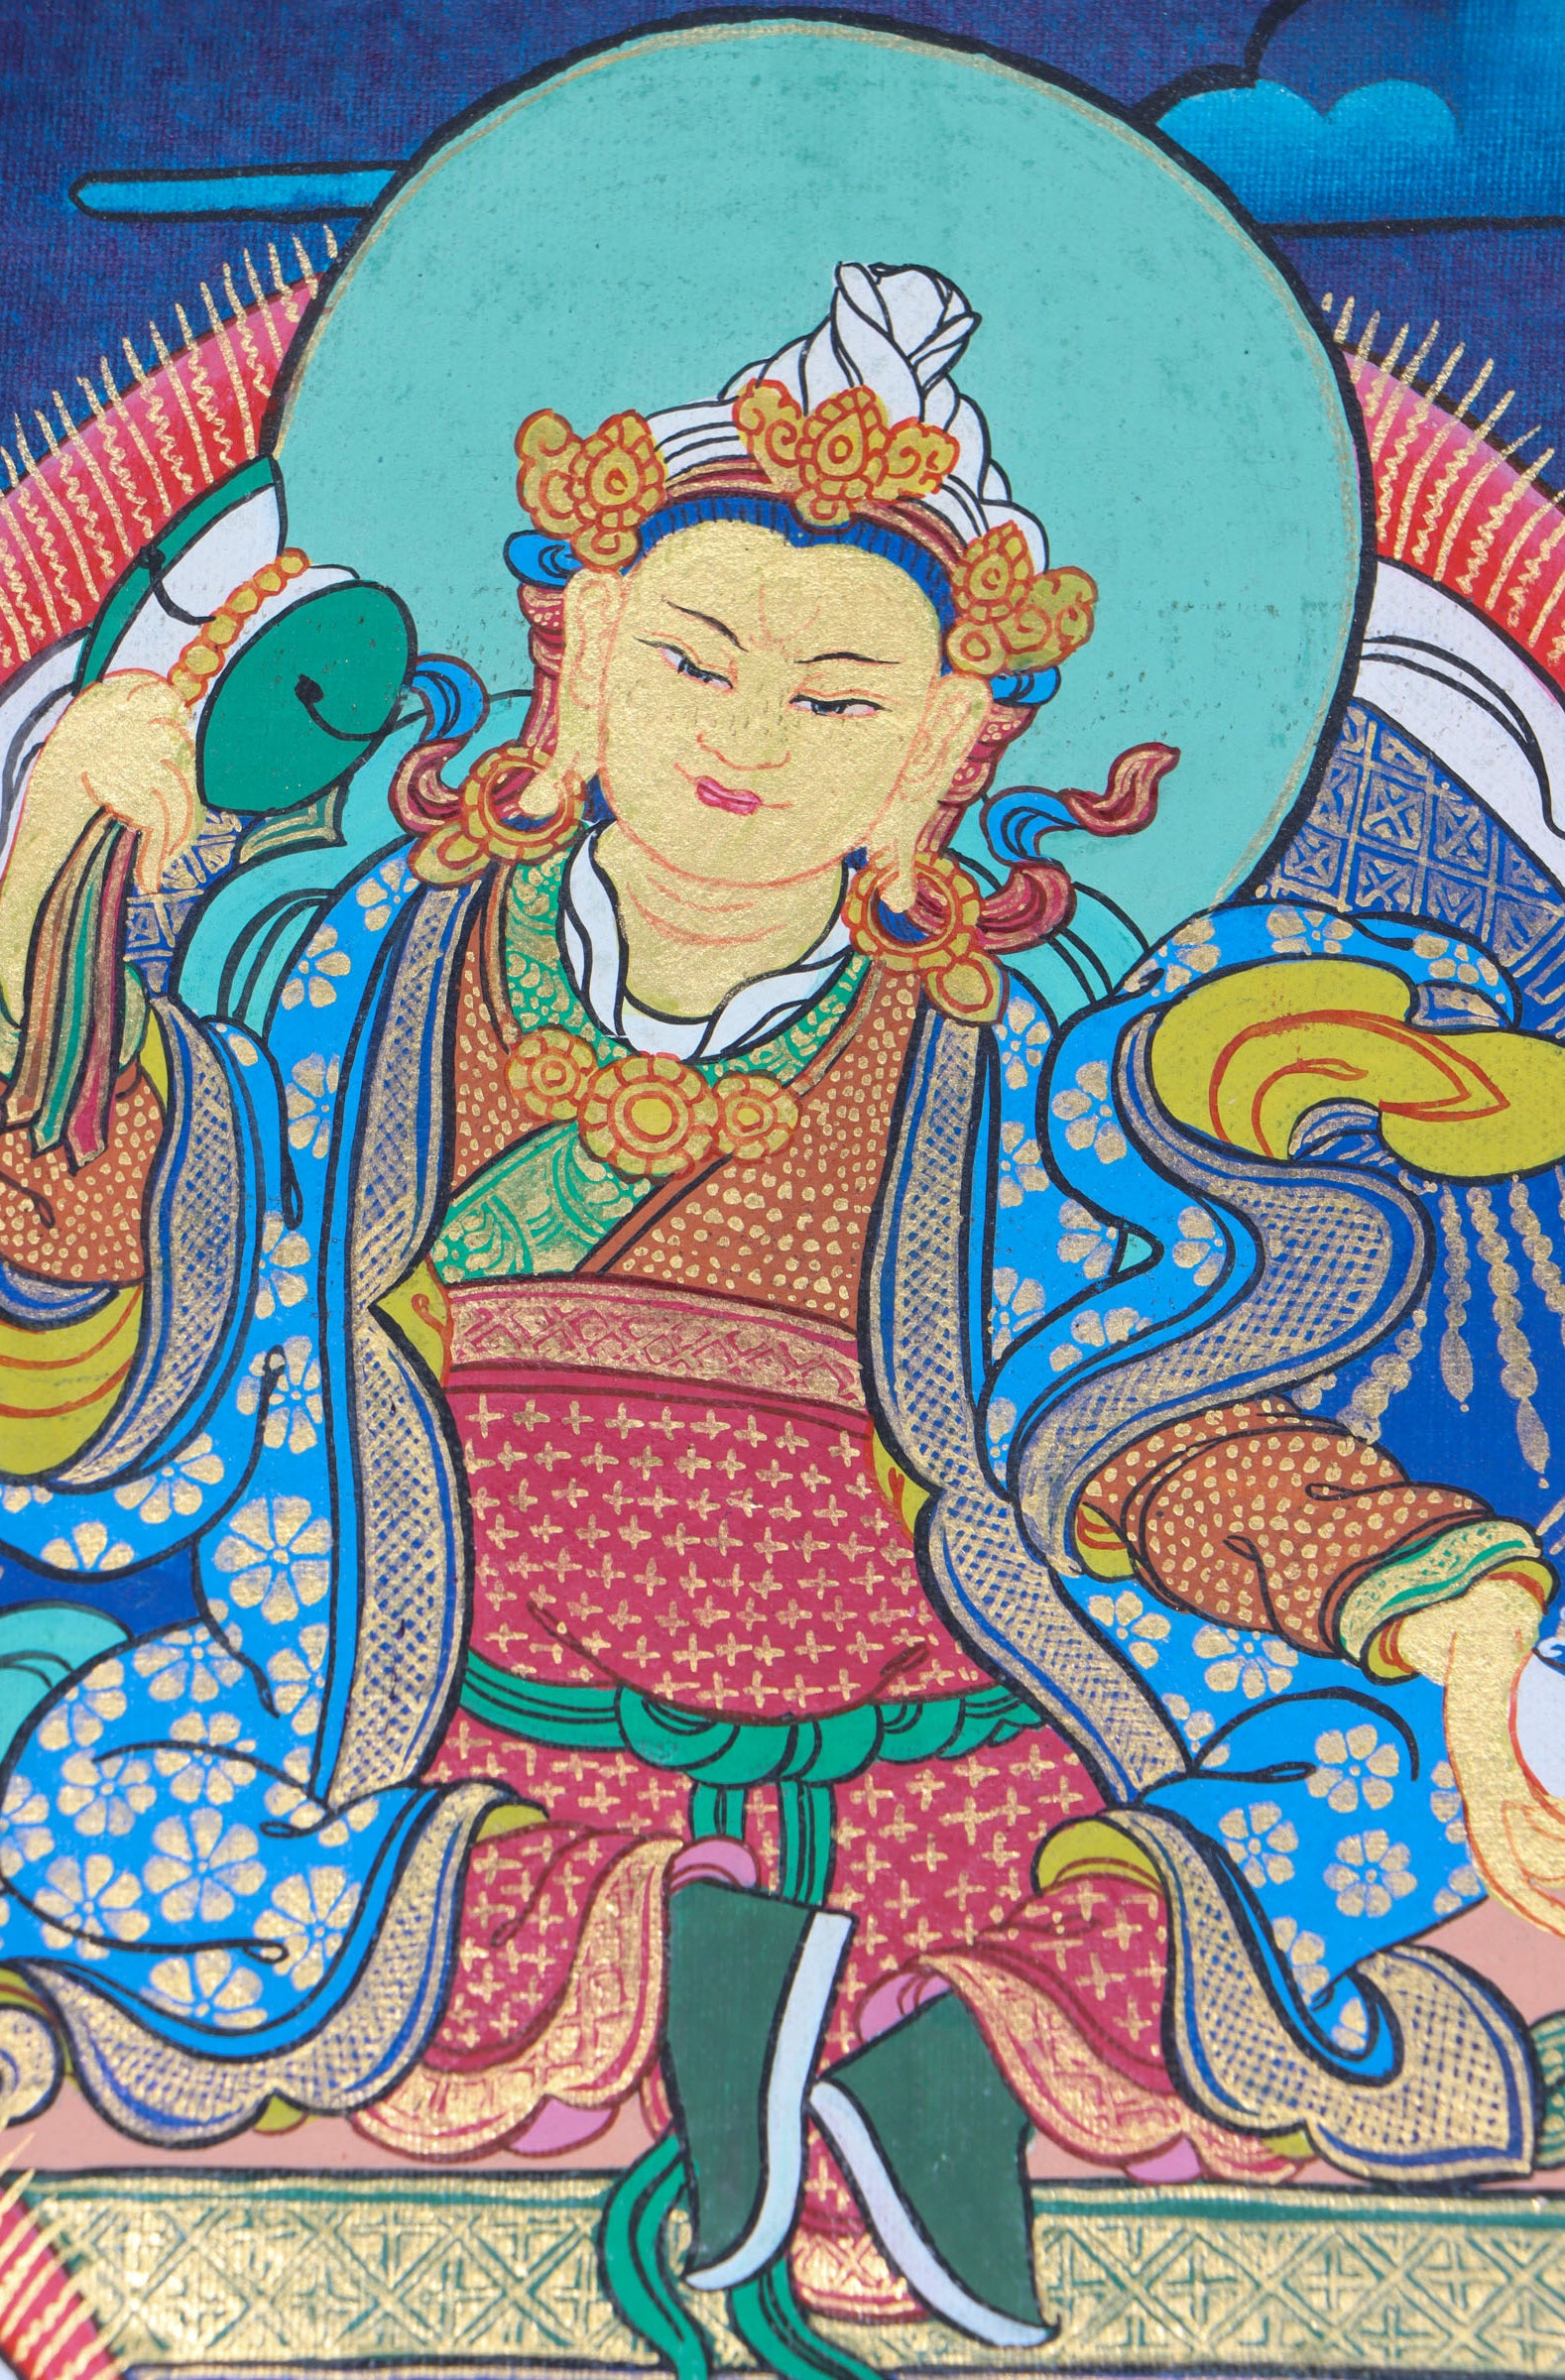 Guru Padmasambhava Thangka Painting for spiritual practices.